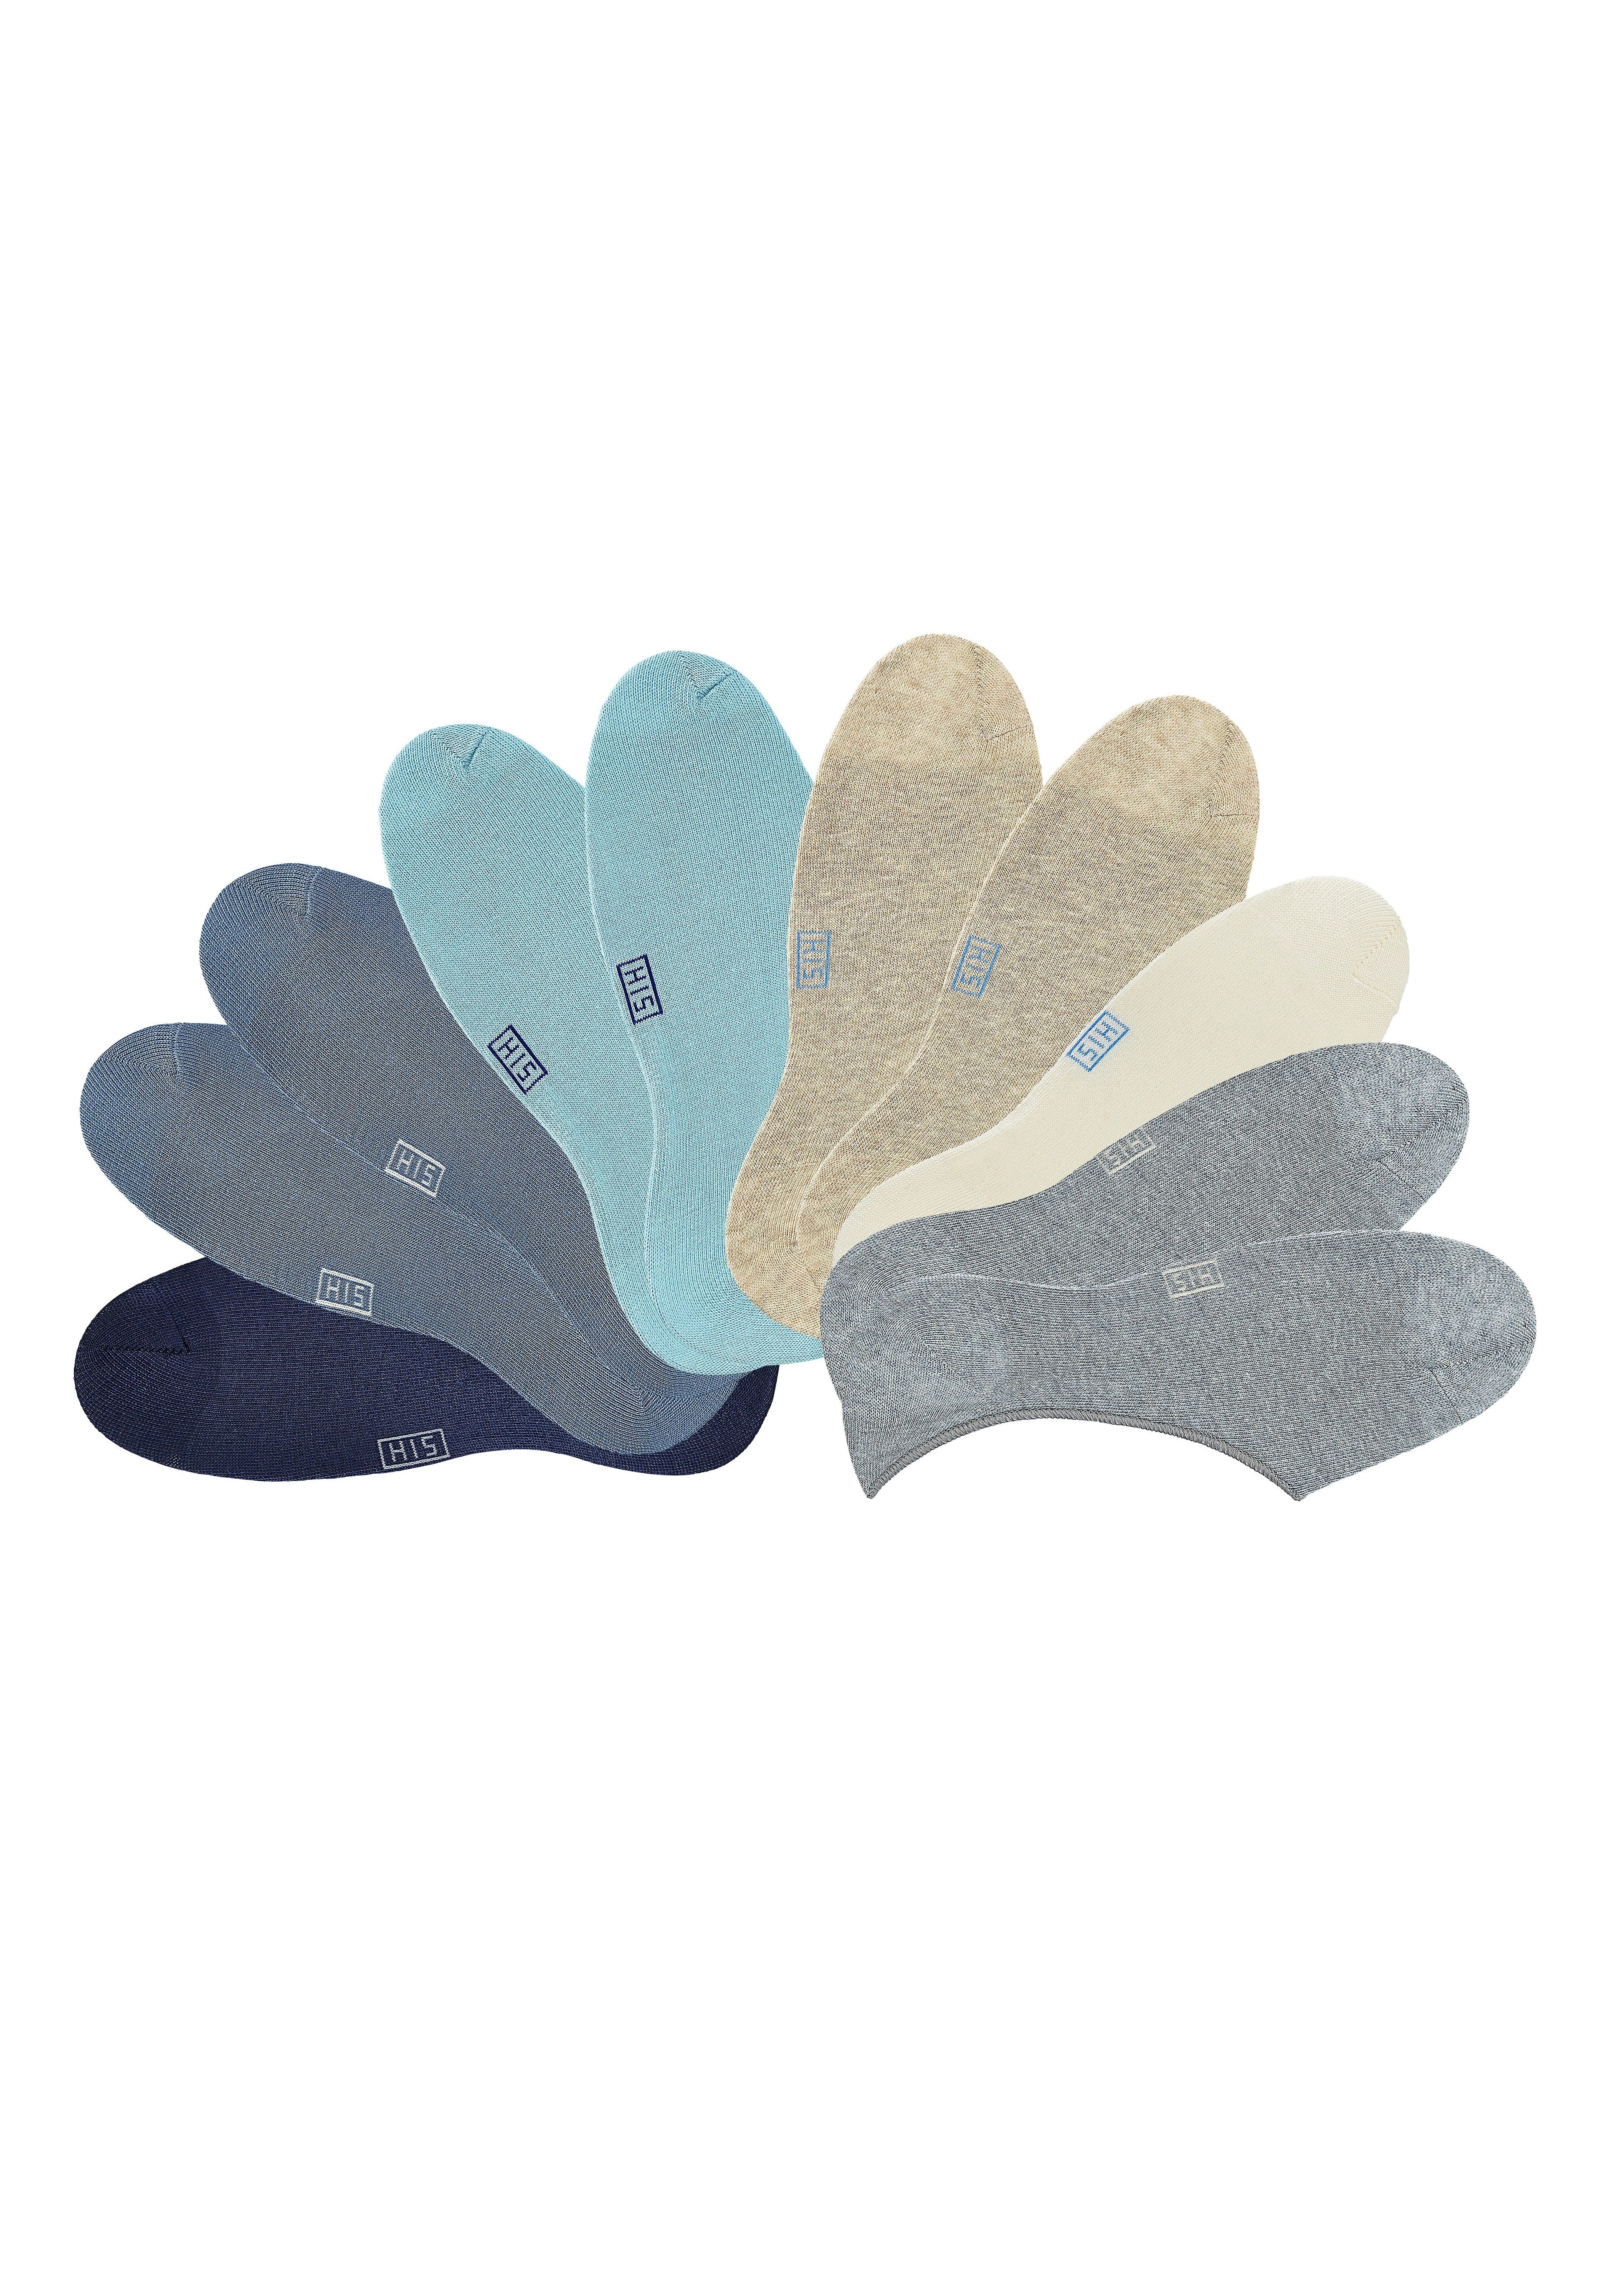 H.I.S Füßlinge (Set, 1x marine, ausgeschnitten jeans, 2x 1x beige, ecru, weit 10-Paar) dunkelblau 2x 2x 2x hellblau